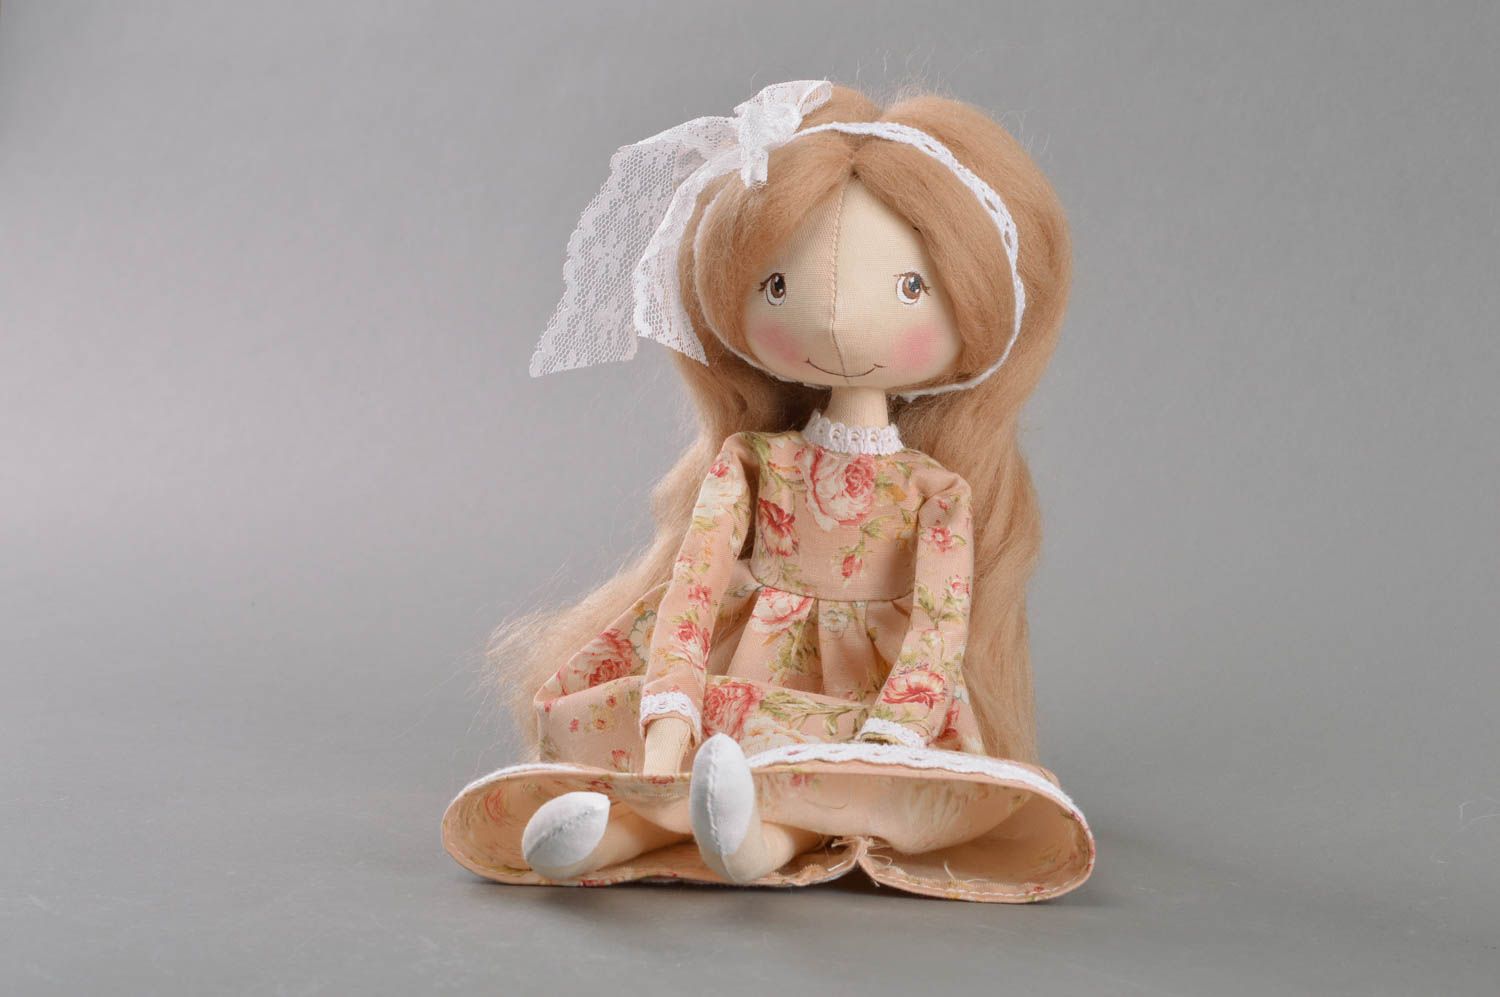 Игрушка кукла из ткани в платье с цветочным принтом на подставке ручная работа фото 3